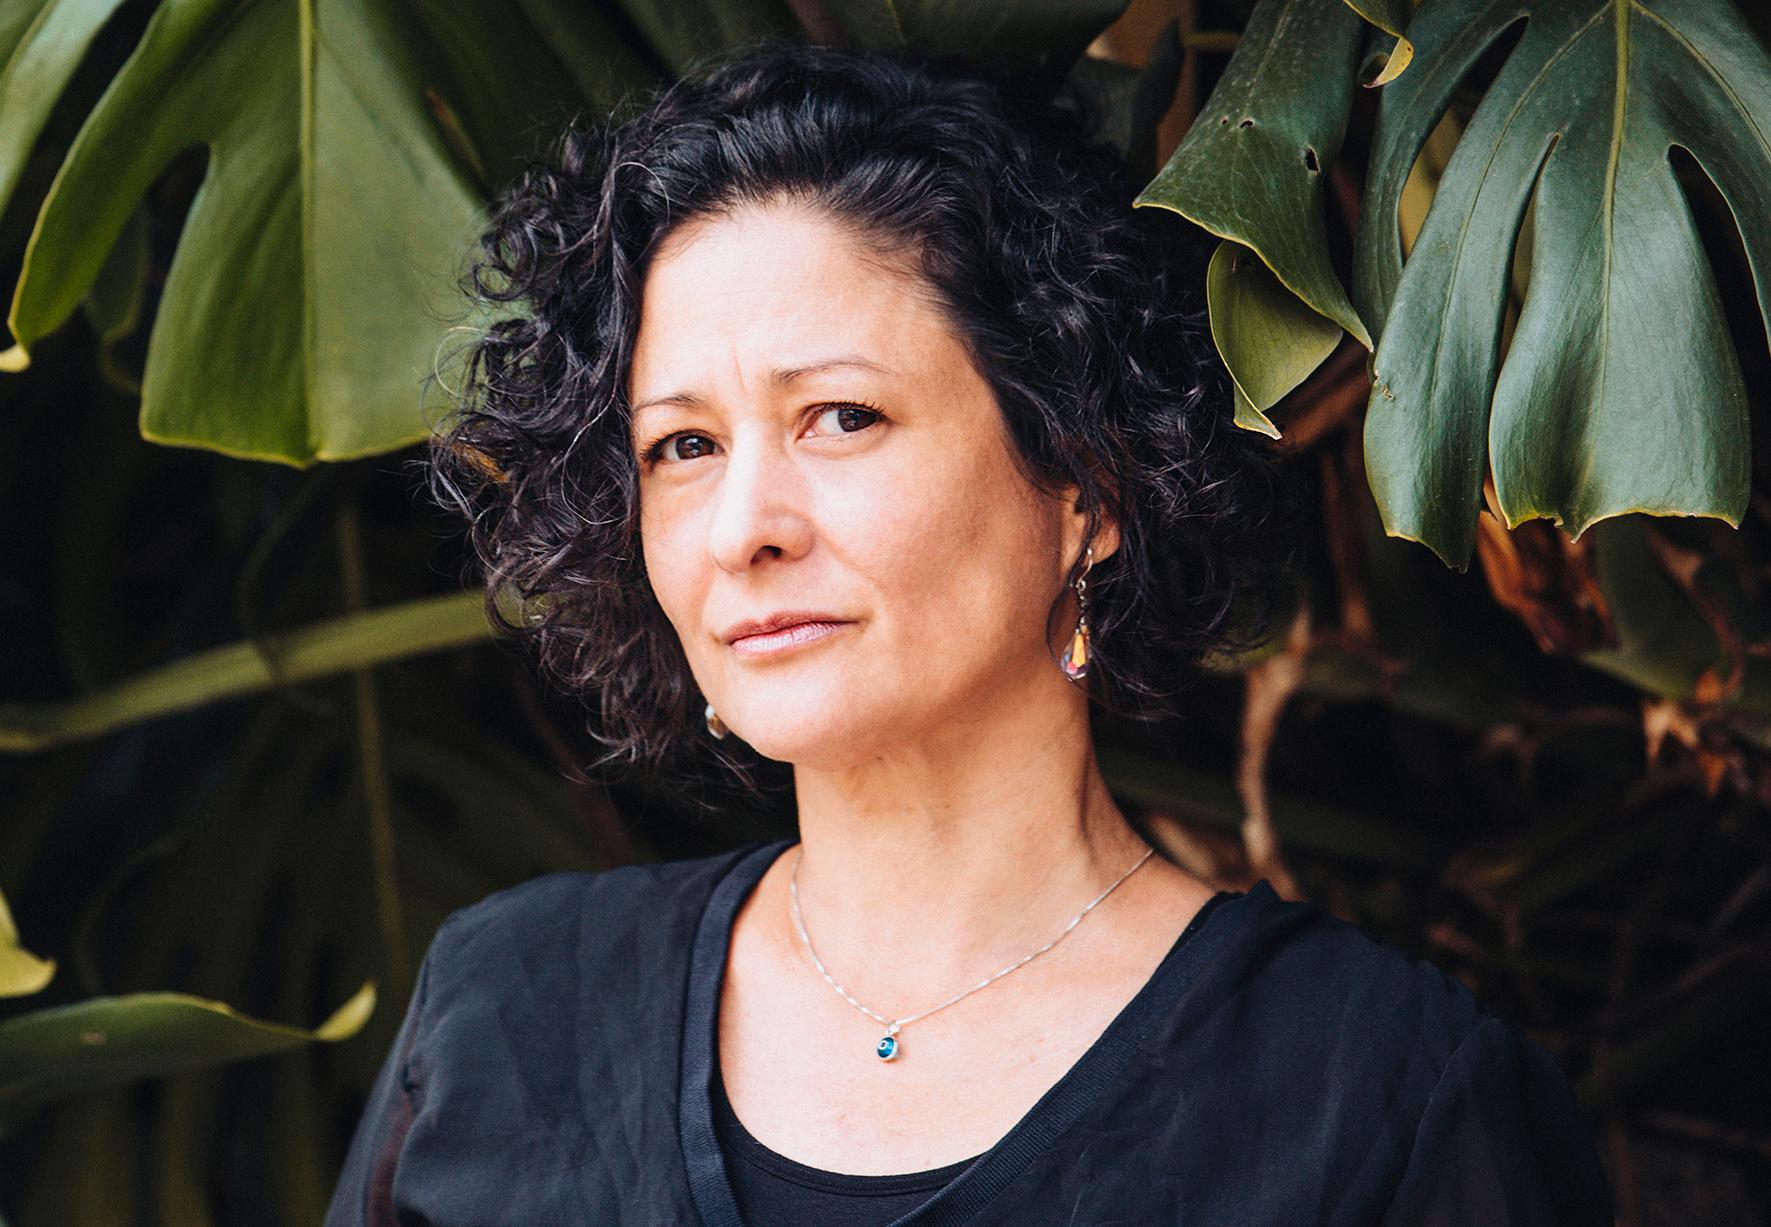 Pilar Quintana (född 1972), colombiansk författare. Hennes mest kända roman är ”Tiken” som 2020 nominerades till National Book Award och belönades med English PEN Award. Hon är nu aktuell med romanen ”Avgrunderna”.